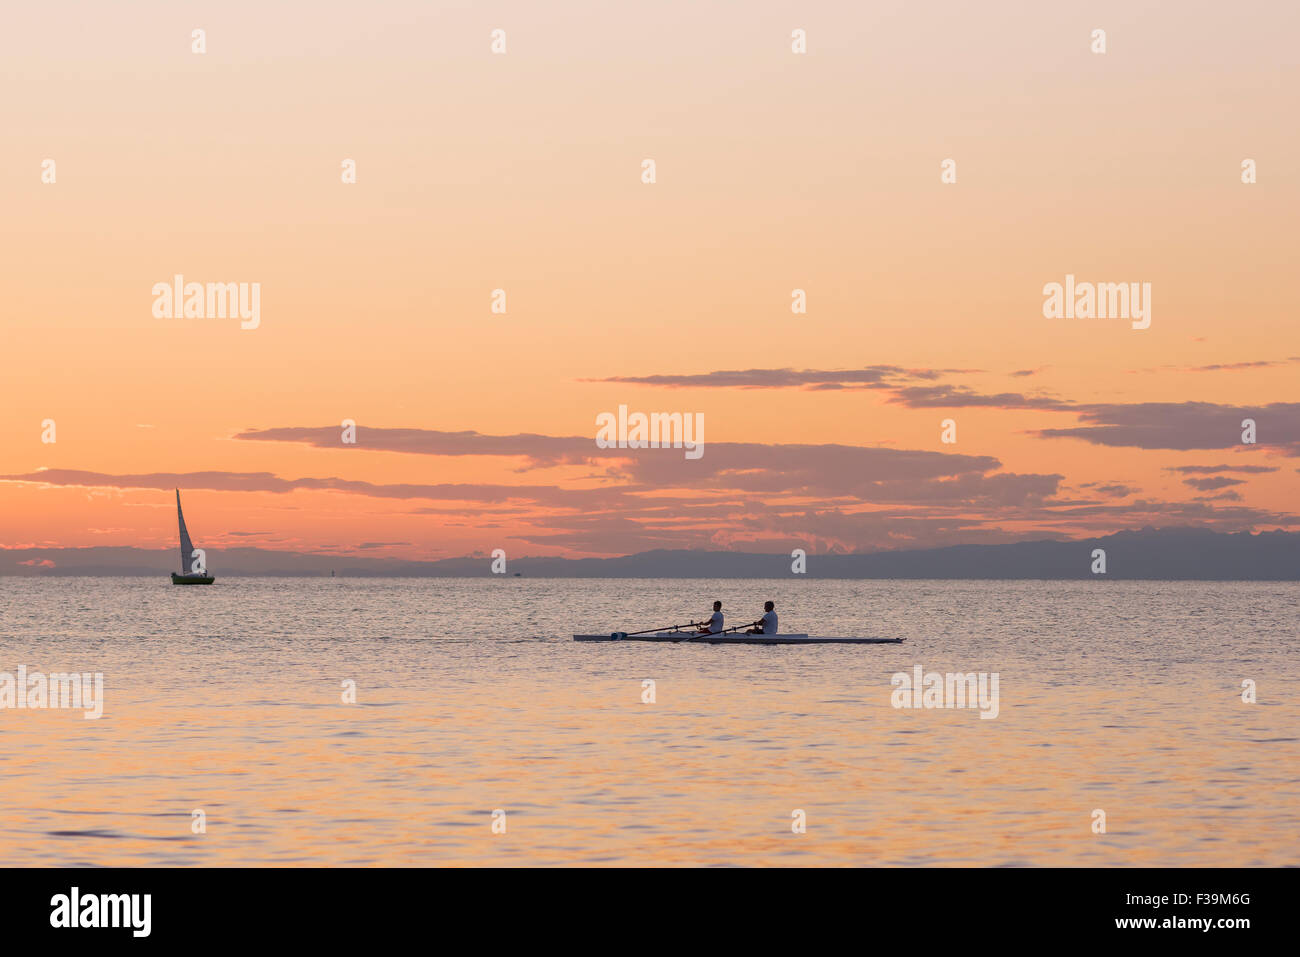 People rowing coucher du soleil au coucher du soleil, une équipe d'aviron dans la pratique, le port de Trieste en Italie. Banque D'Images